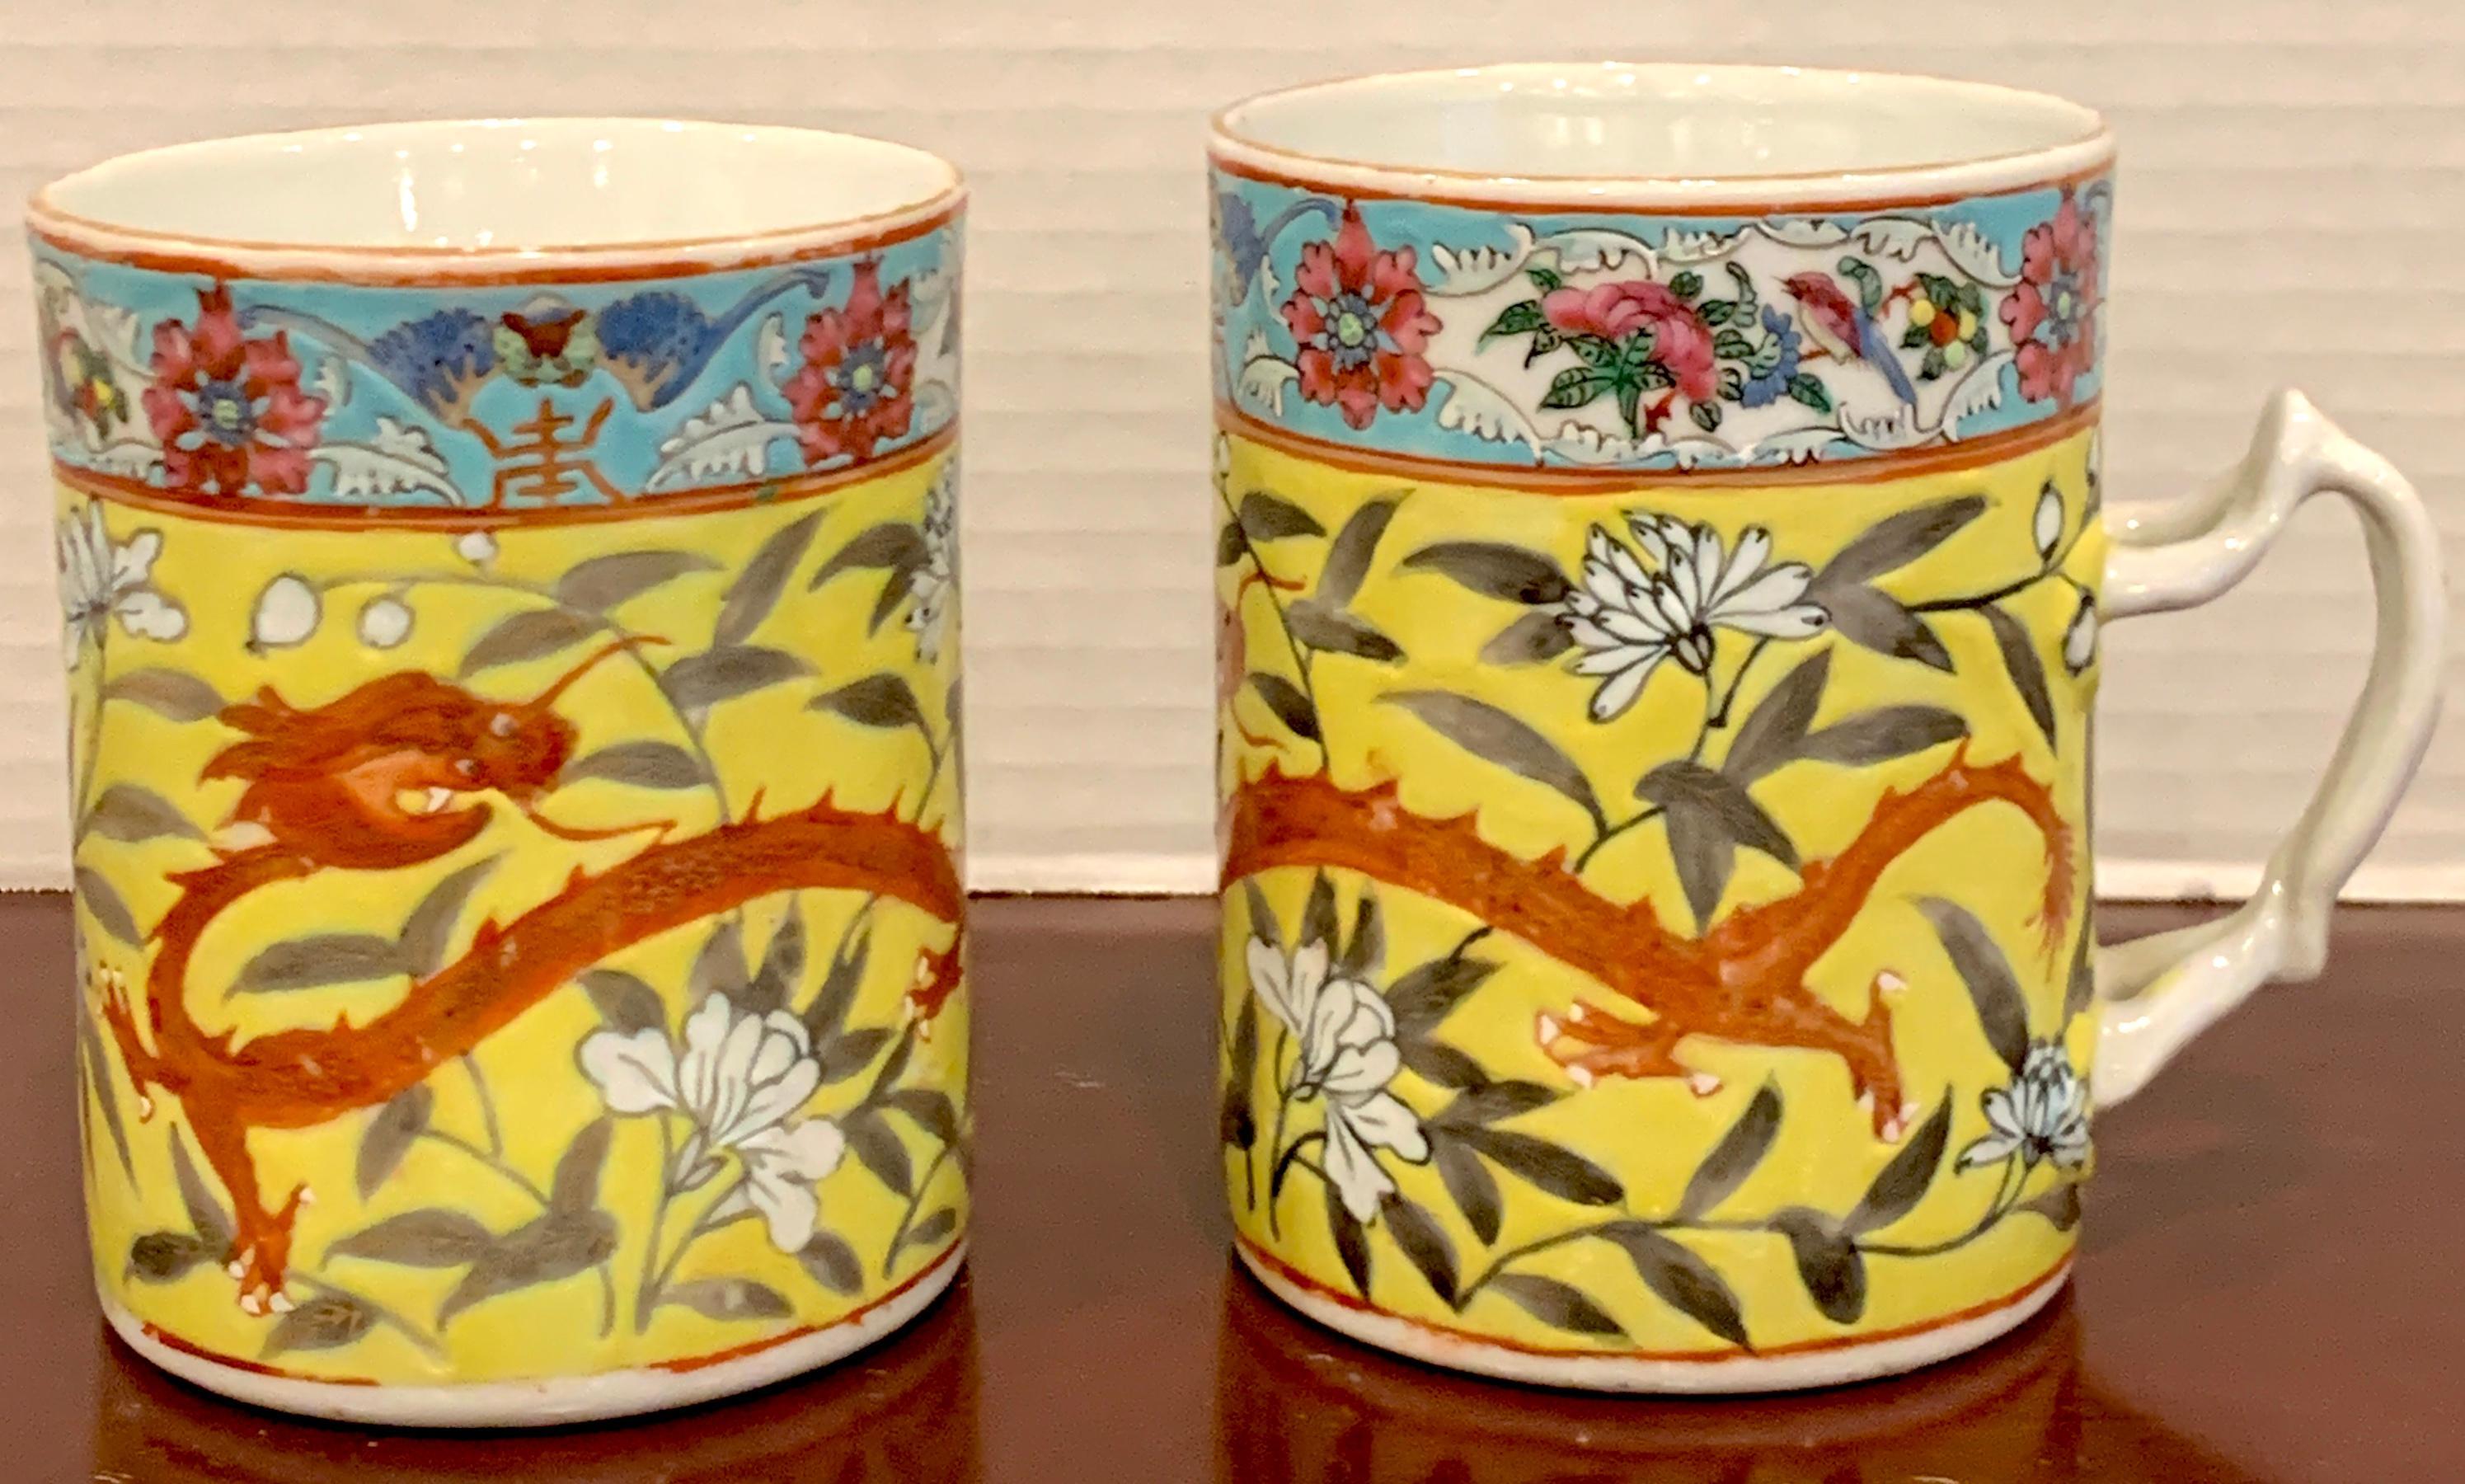 Paar chinesische Famille Verte-Tassen mit gelbem Drachenmotiv aus dem 19. Jahrhundert. Jede Tasse ist mit einem vierzackigen Drachen vor einem gelben Blumenhintergrund verziert. Jedes Stück misst 4,75